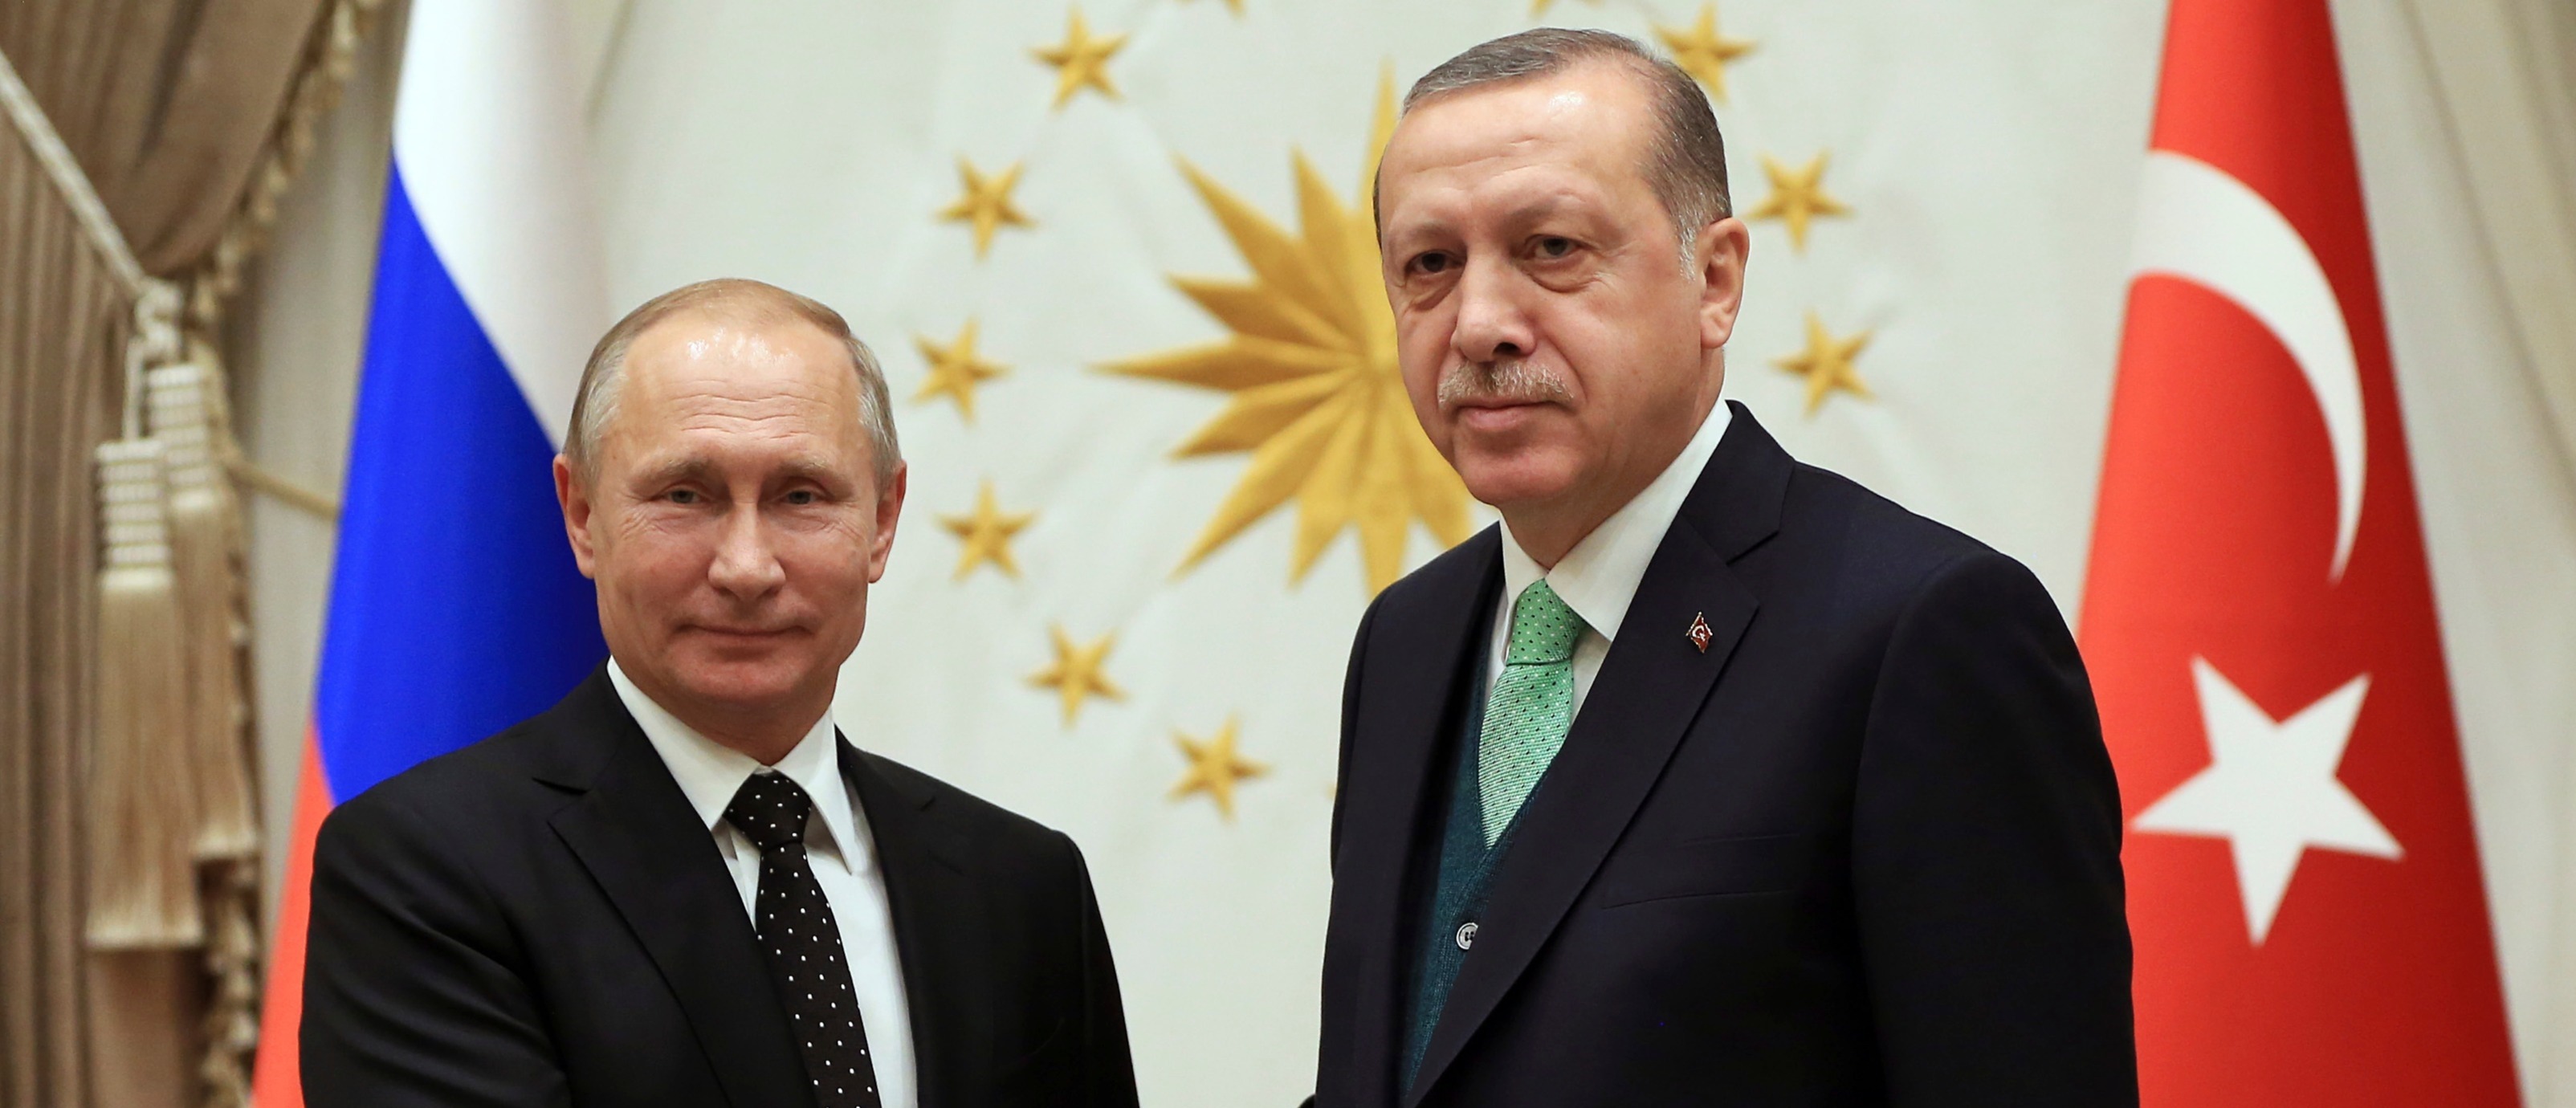 Συρία τώρα: Τι συζήτησαν Πούτιν και Ερντογάν – Εκπνέει η εκεχειρία